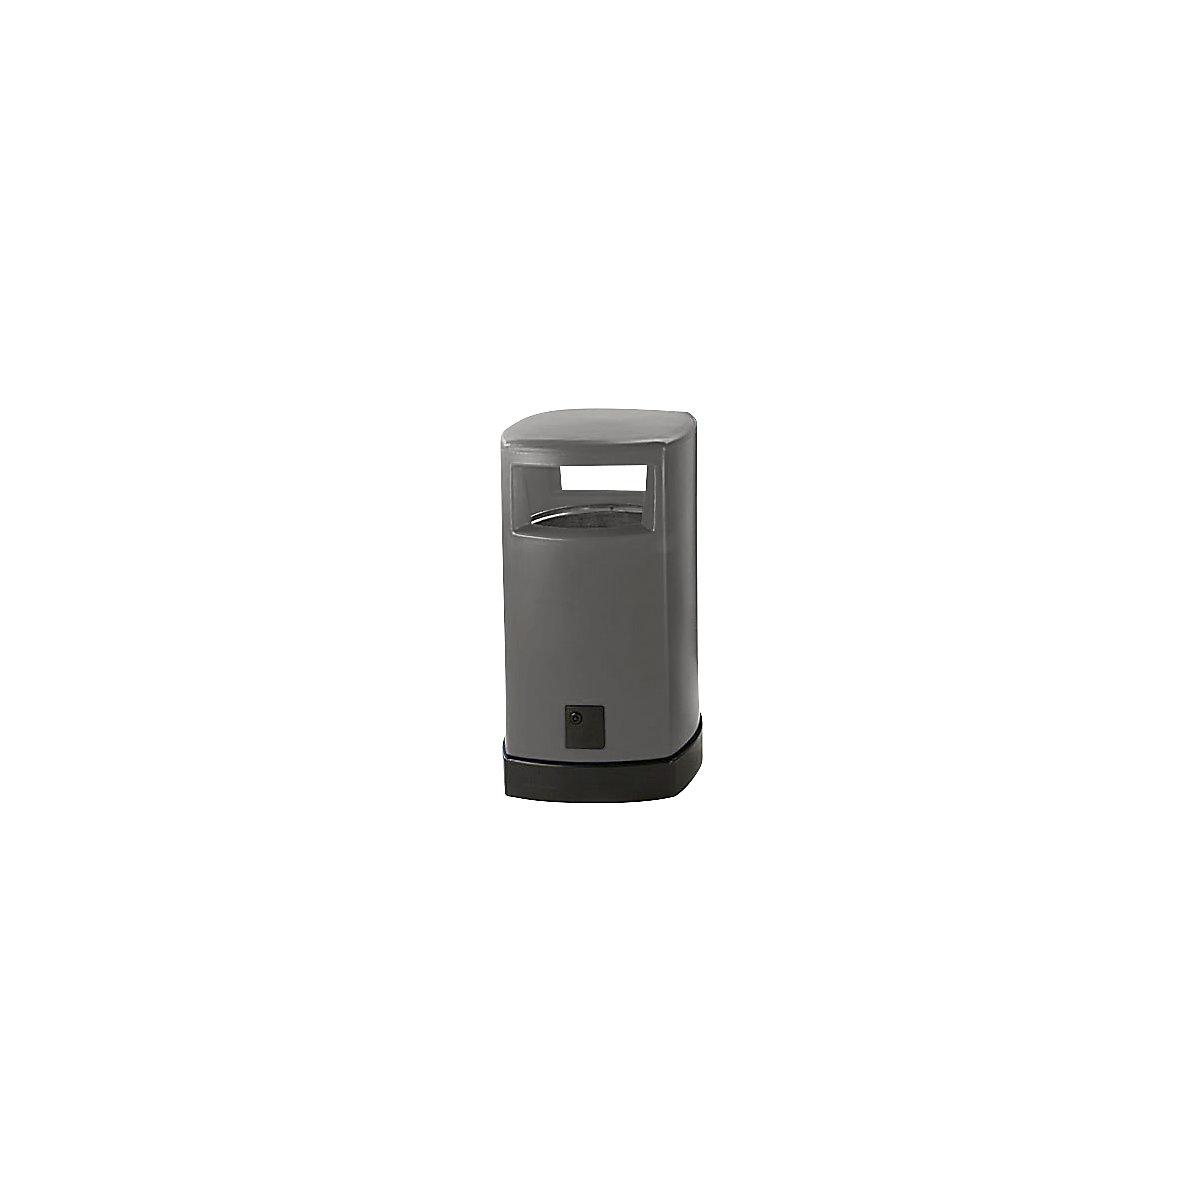 Vanjski plastični spremnik za otpatke, volumen 120 l, ŠxVxD 580 x 1050 x 580 mm, u sivoj boji-4